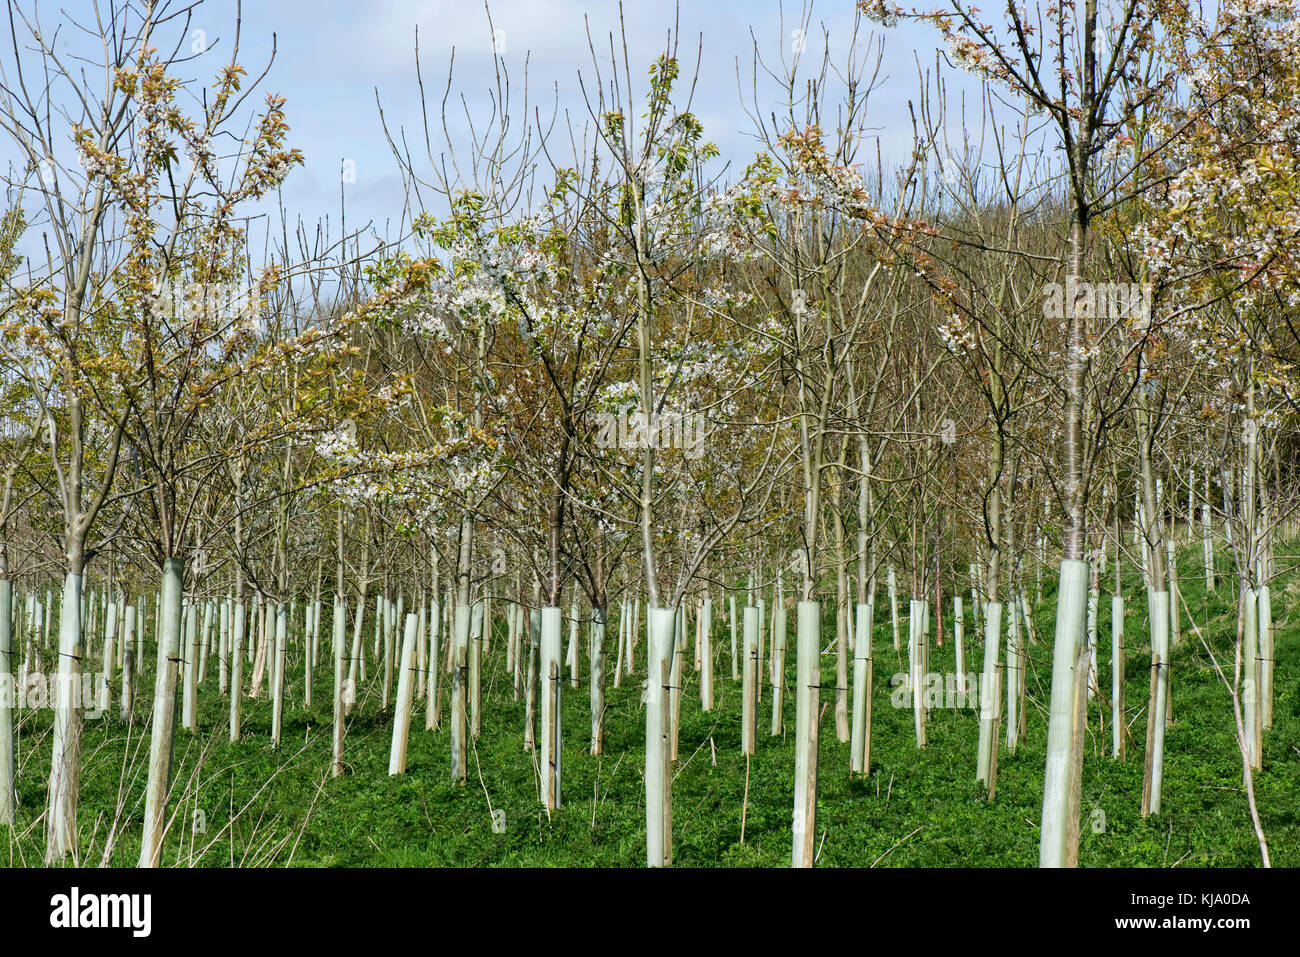 Eine Plantage von jungen Bäumen für Wälder, blühende wilde Kirschen und Andere, in Schutzhülle aus Kunststoff Rohre im Frühling, Berkshire, April Stockfoto